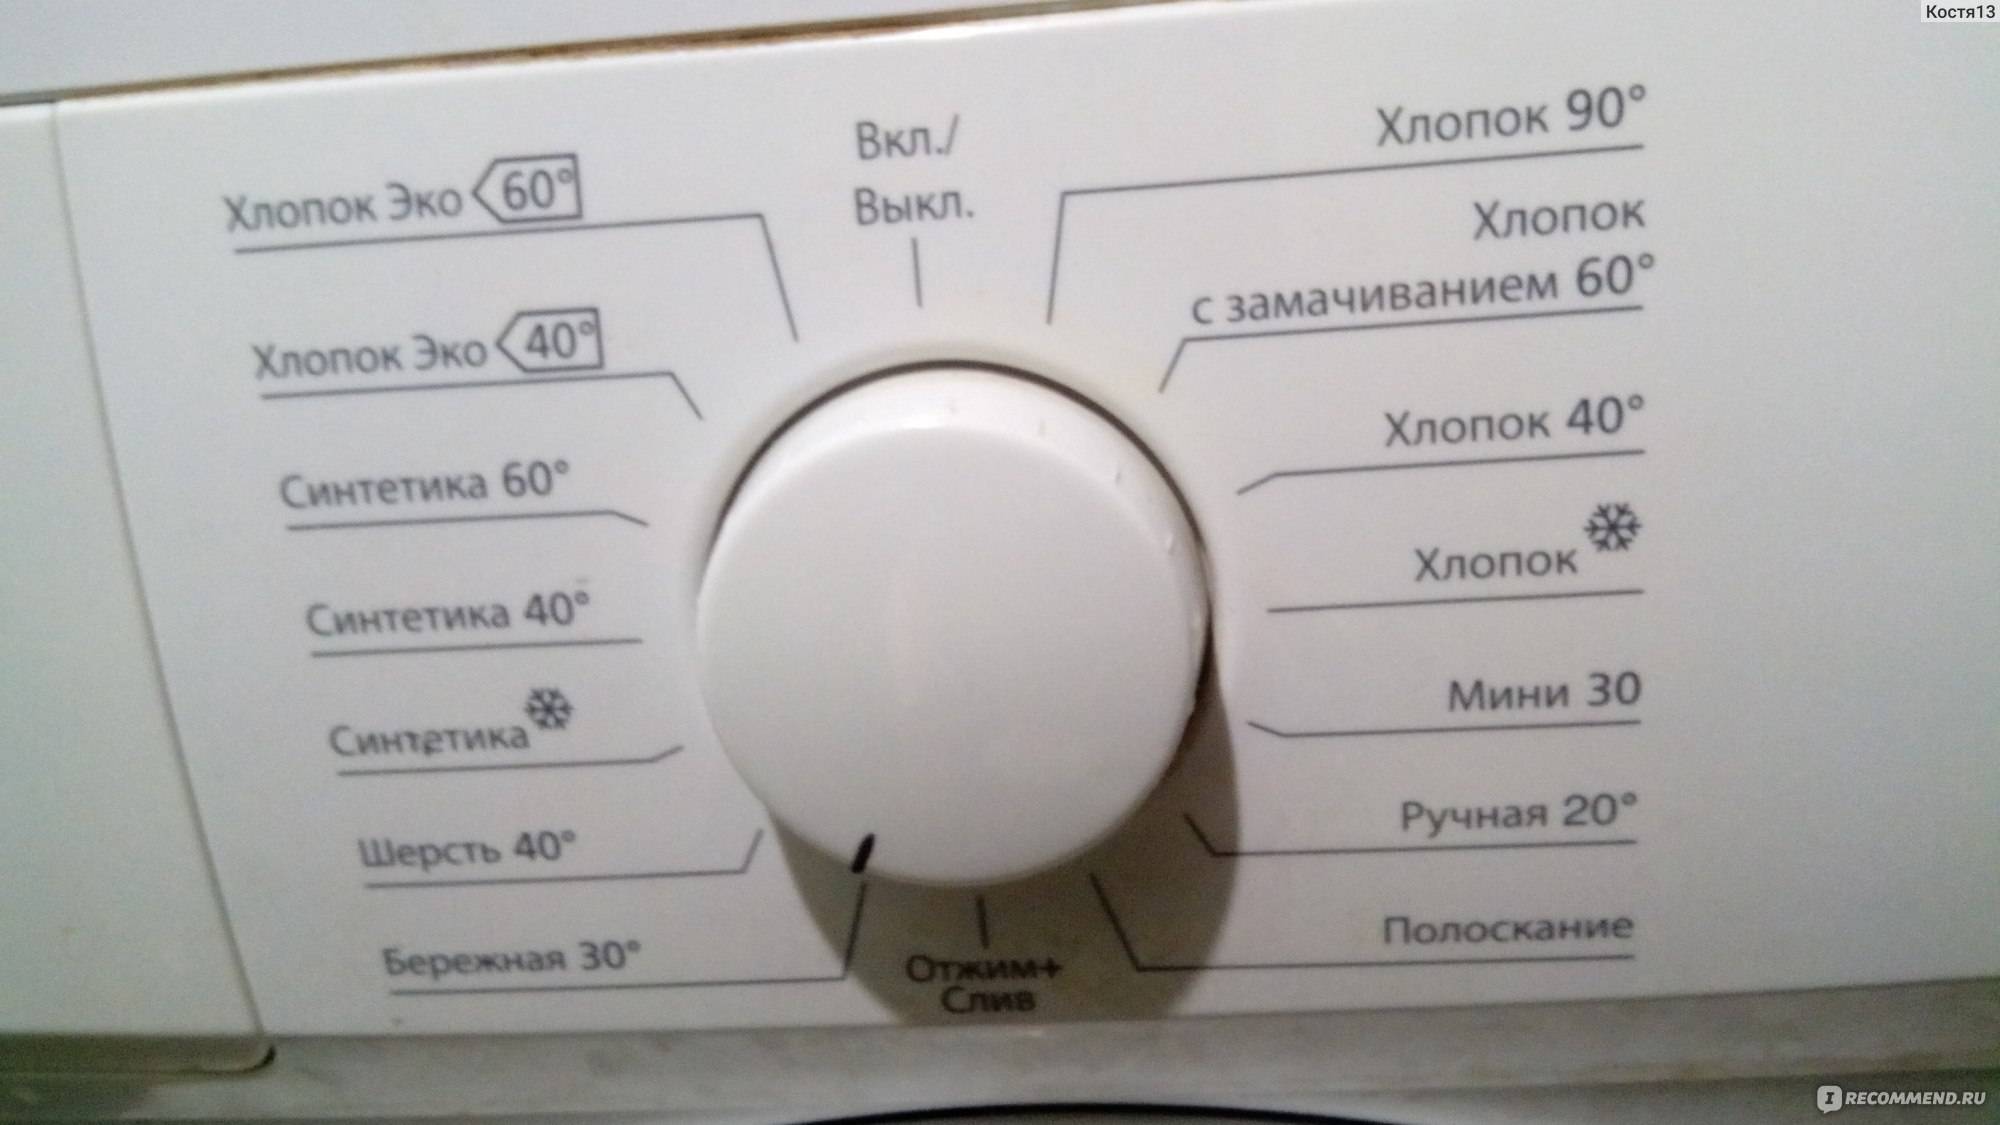 Ошибка oe (0e) стиральной машины lg: что делать и как устранить